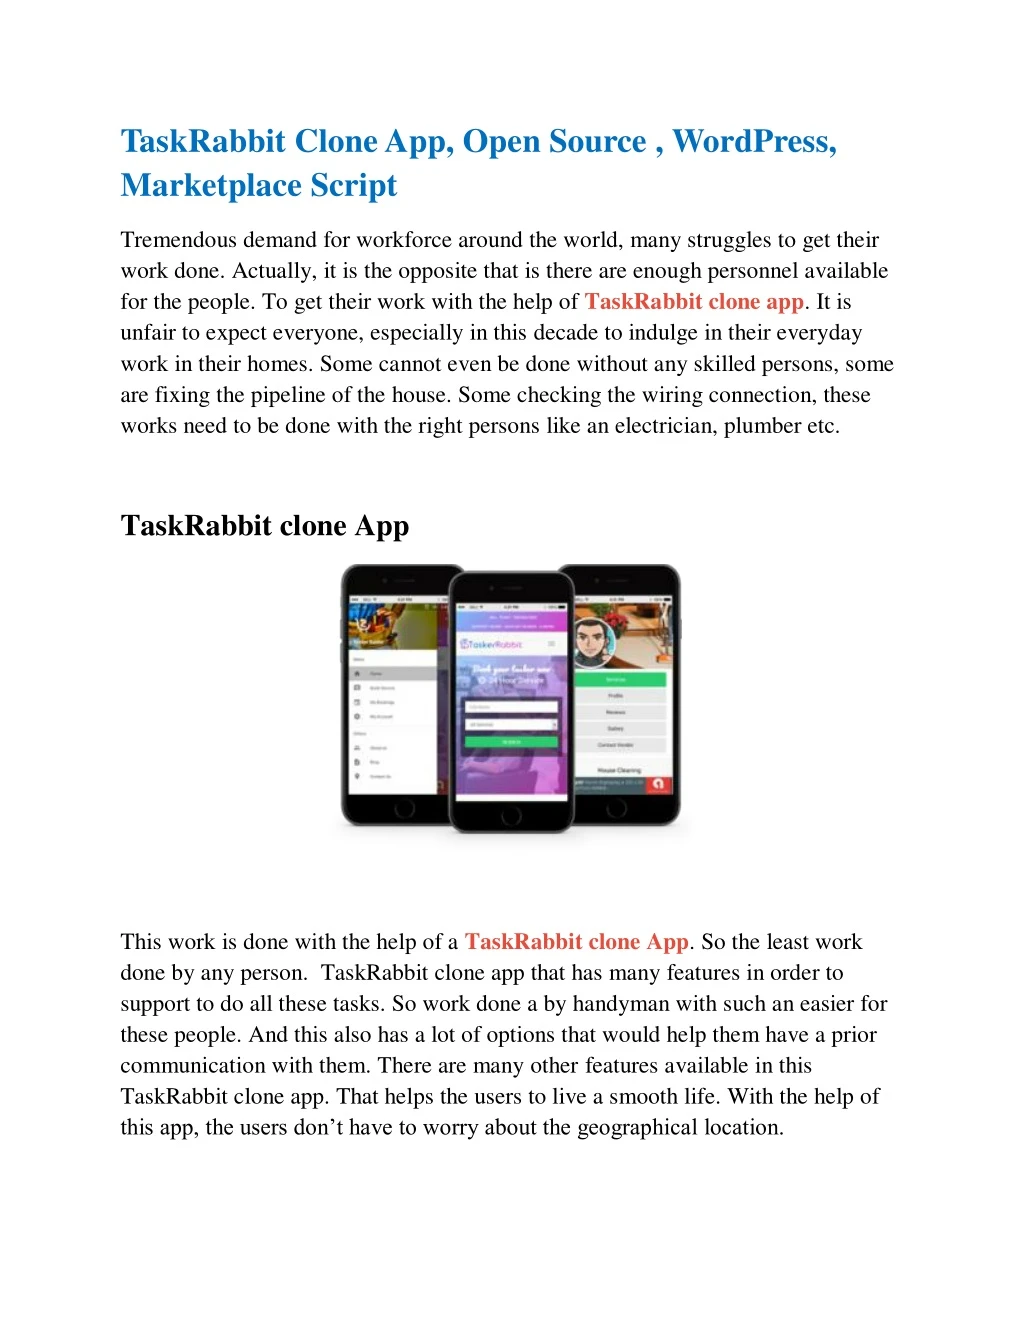 taskrabbit clone app open source wordpress